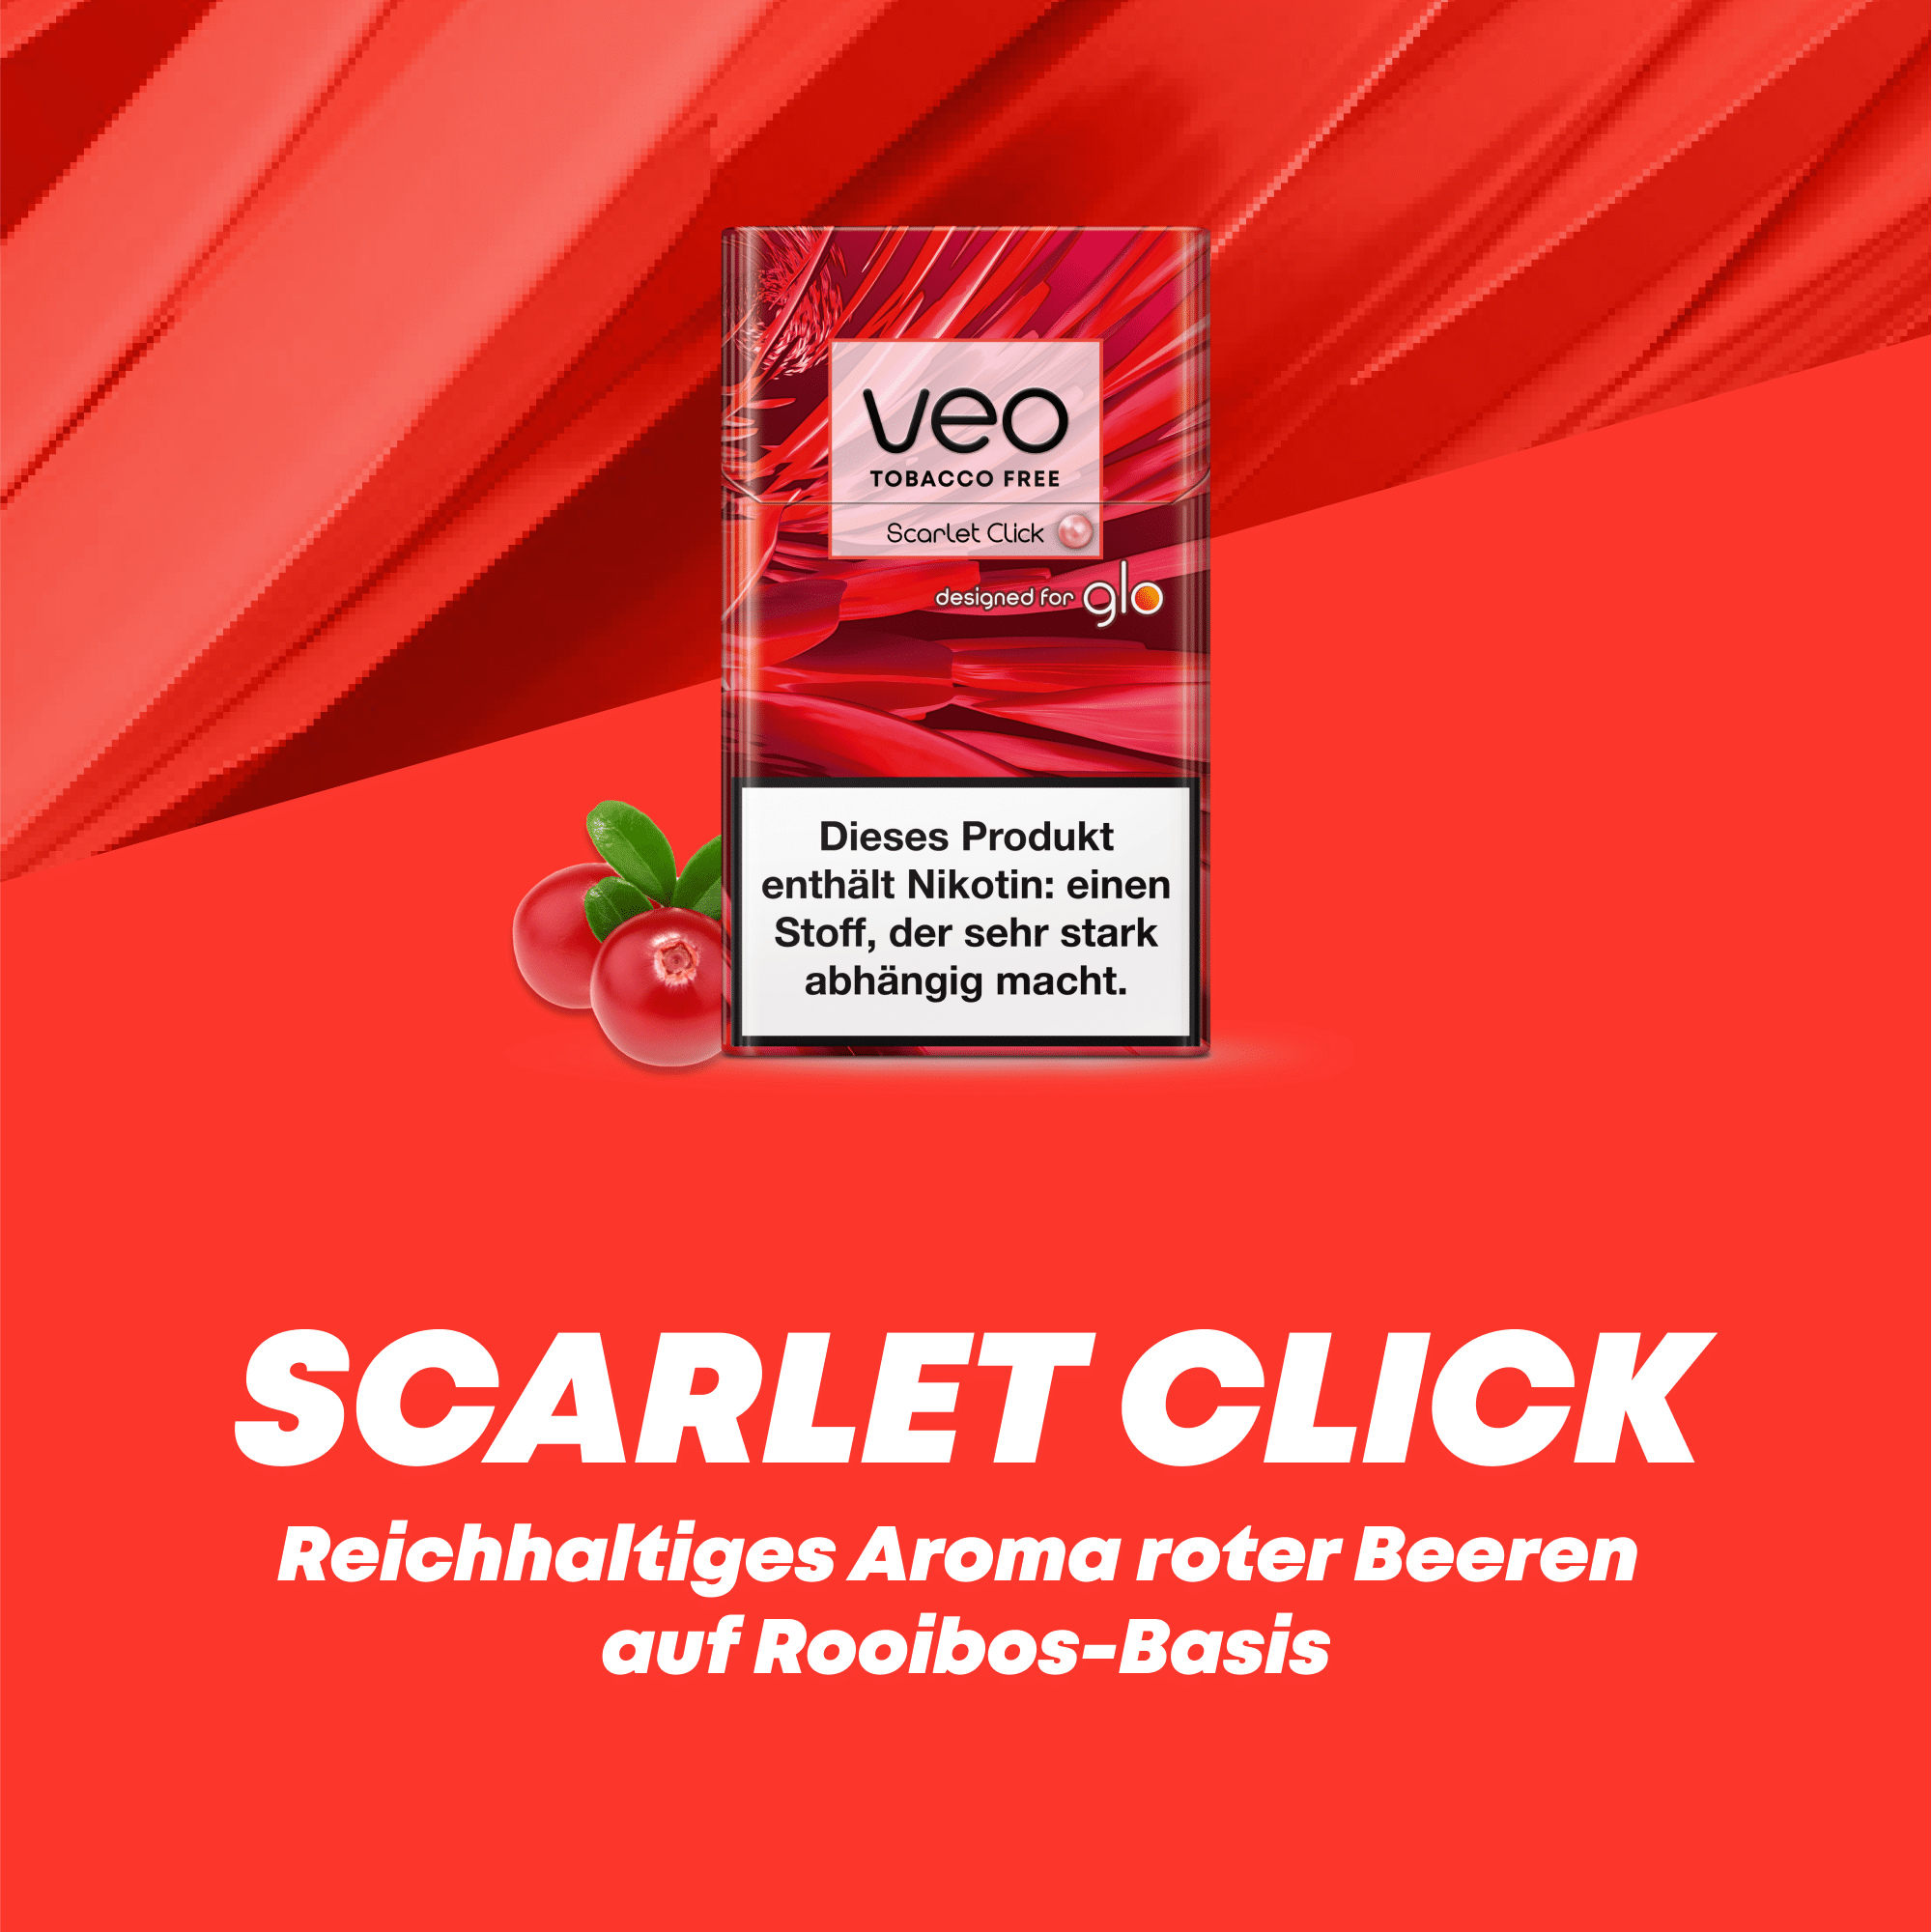 NEO Scarlet Click